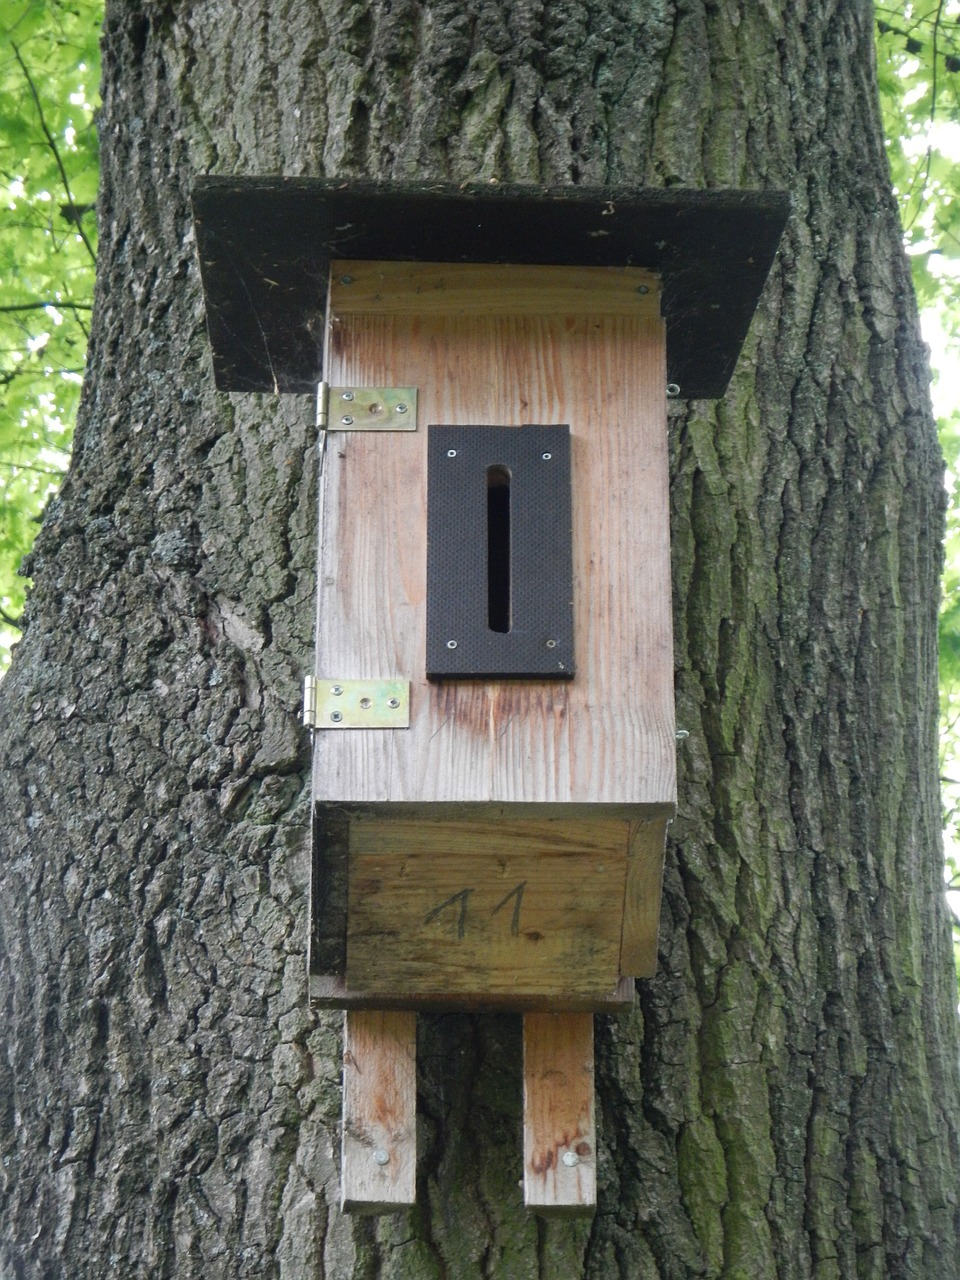 nesting box aviary bird feeder free photo